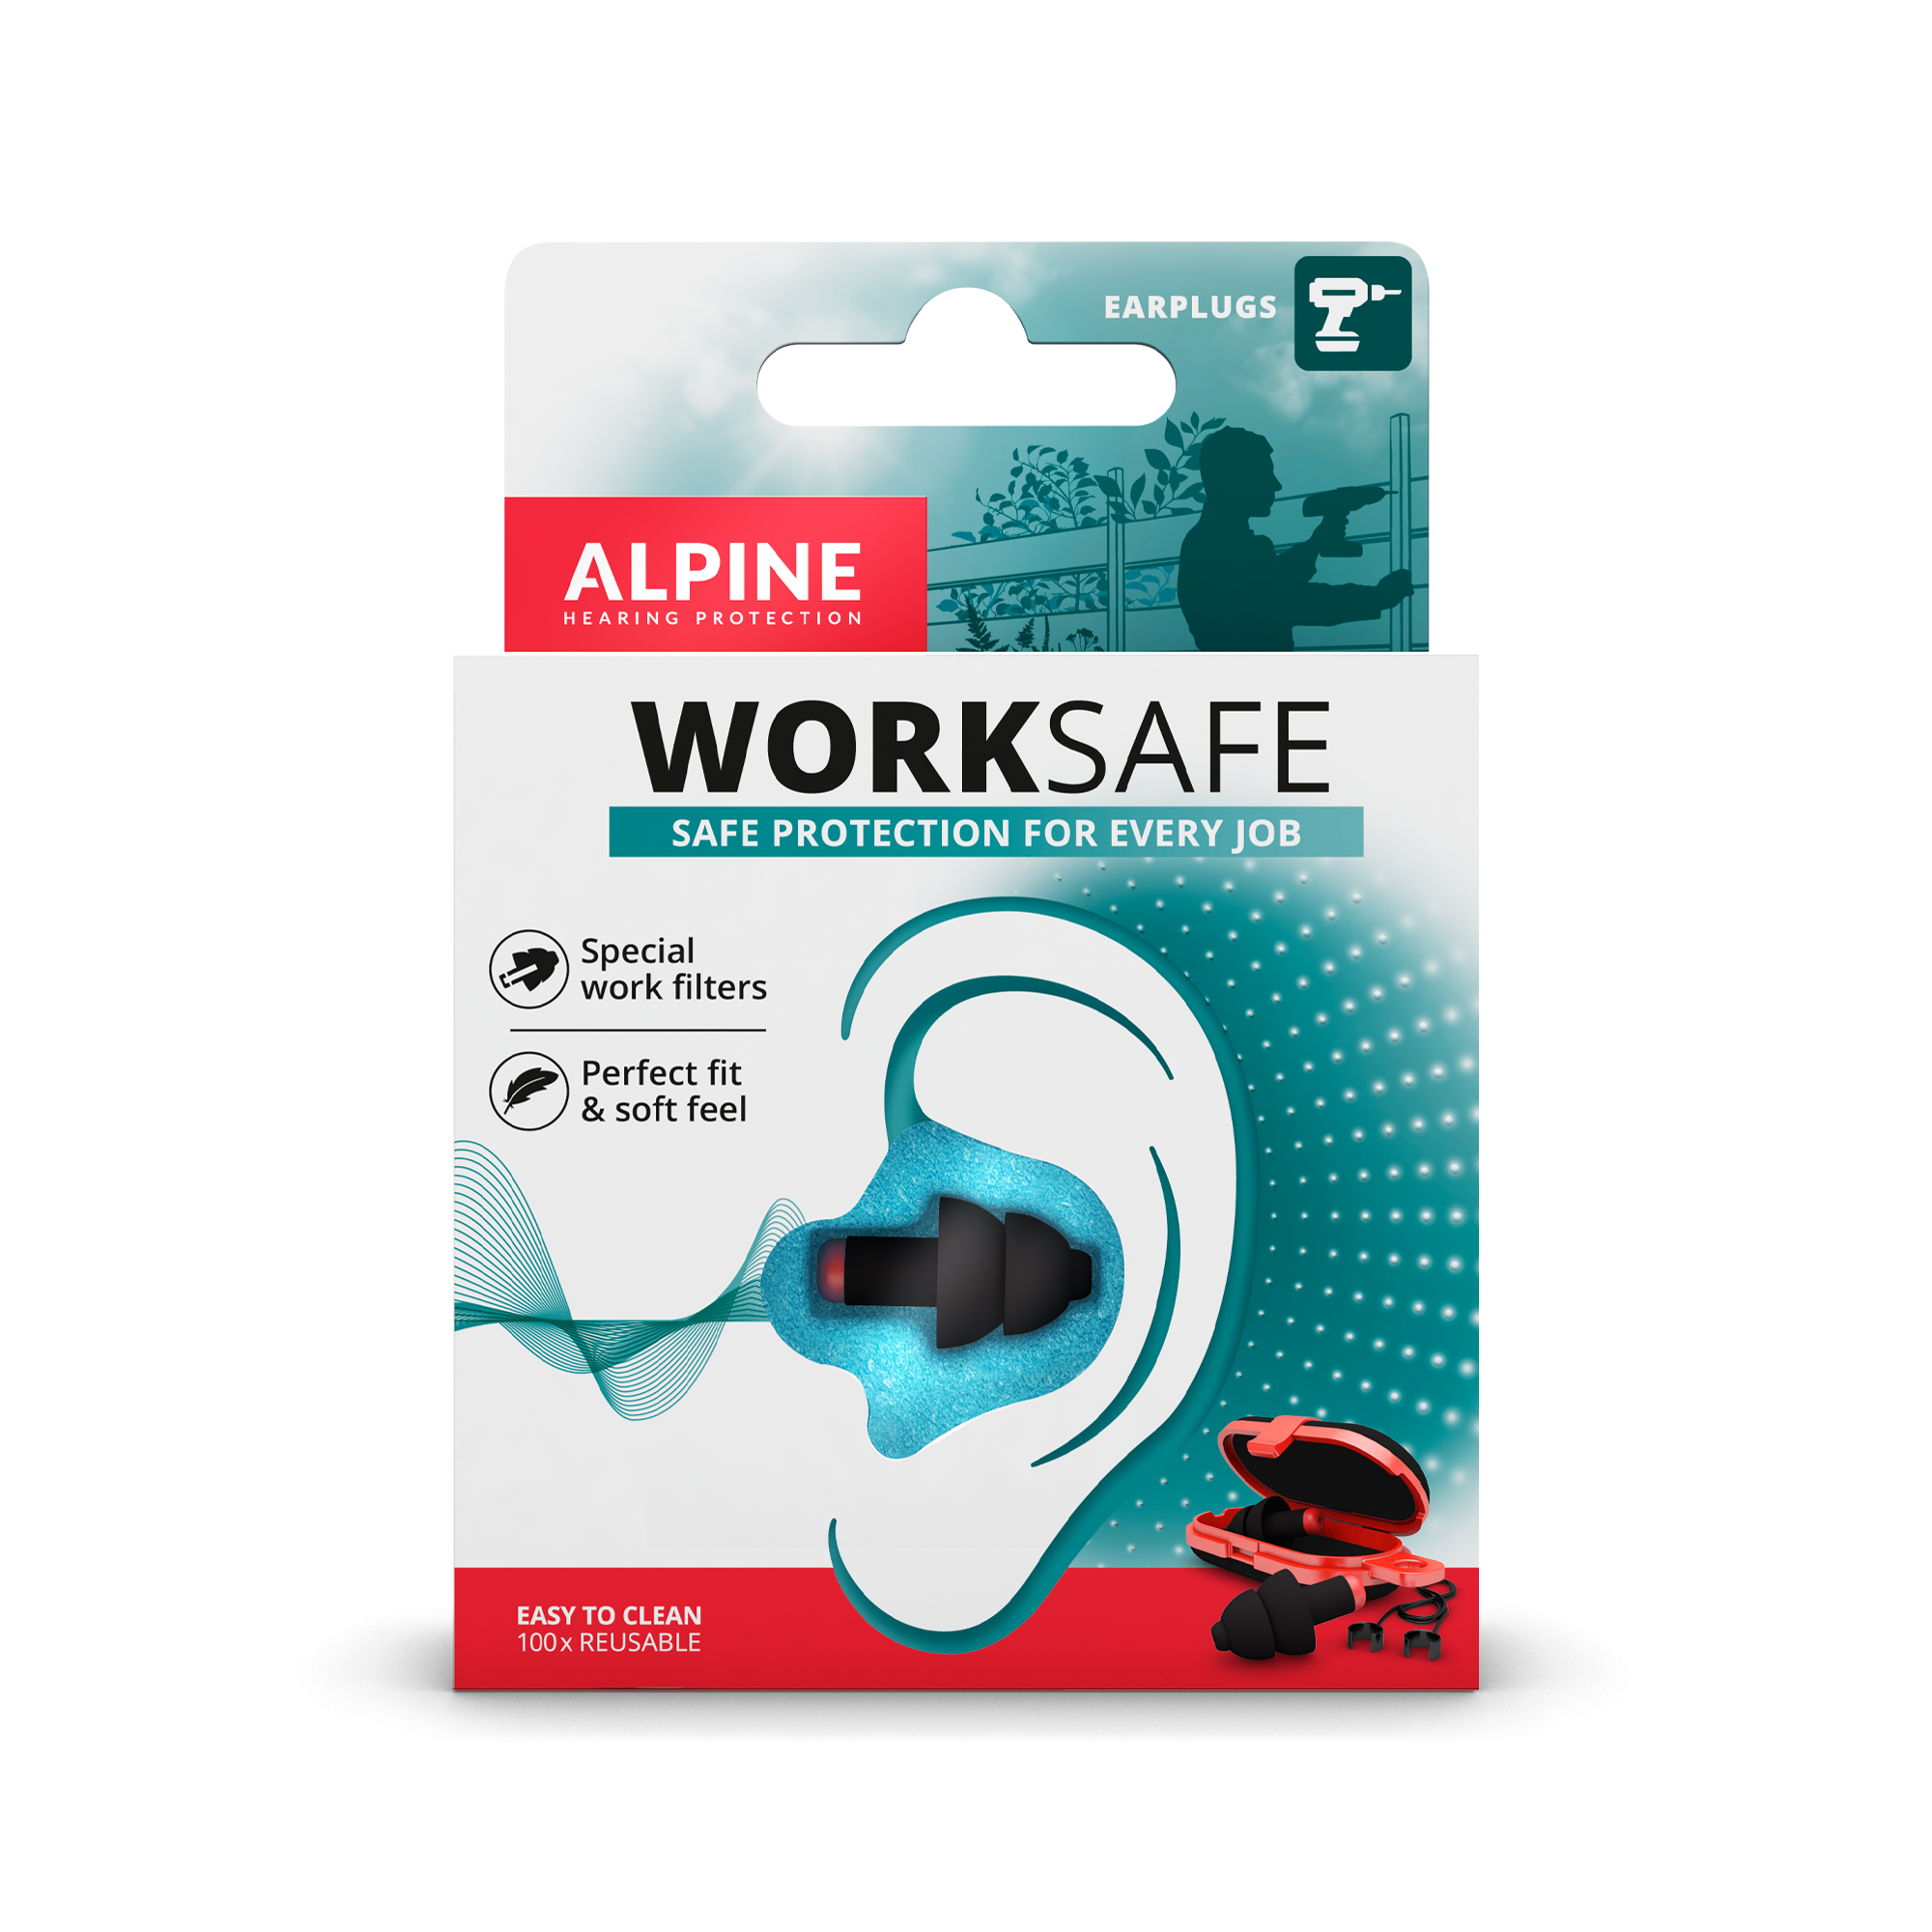 Alpine WorkSafe oordoppen beschermen de tijdens het en werk Alpine Hearing Protection